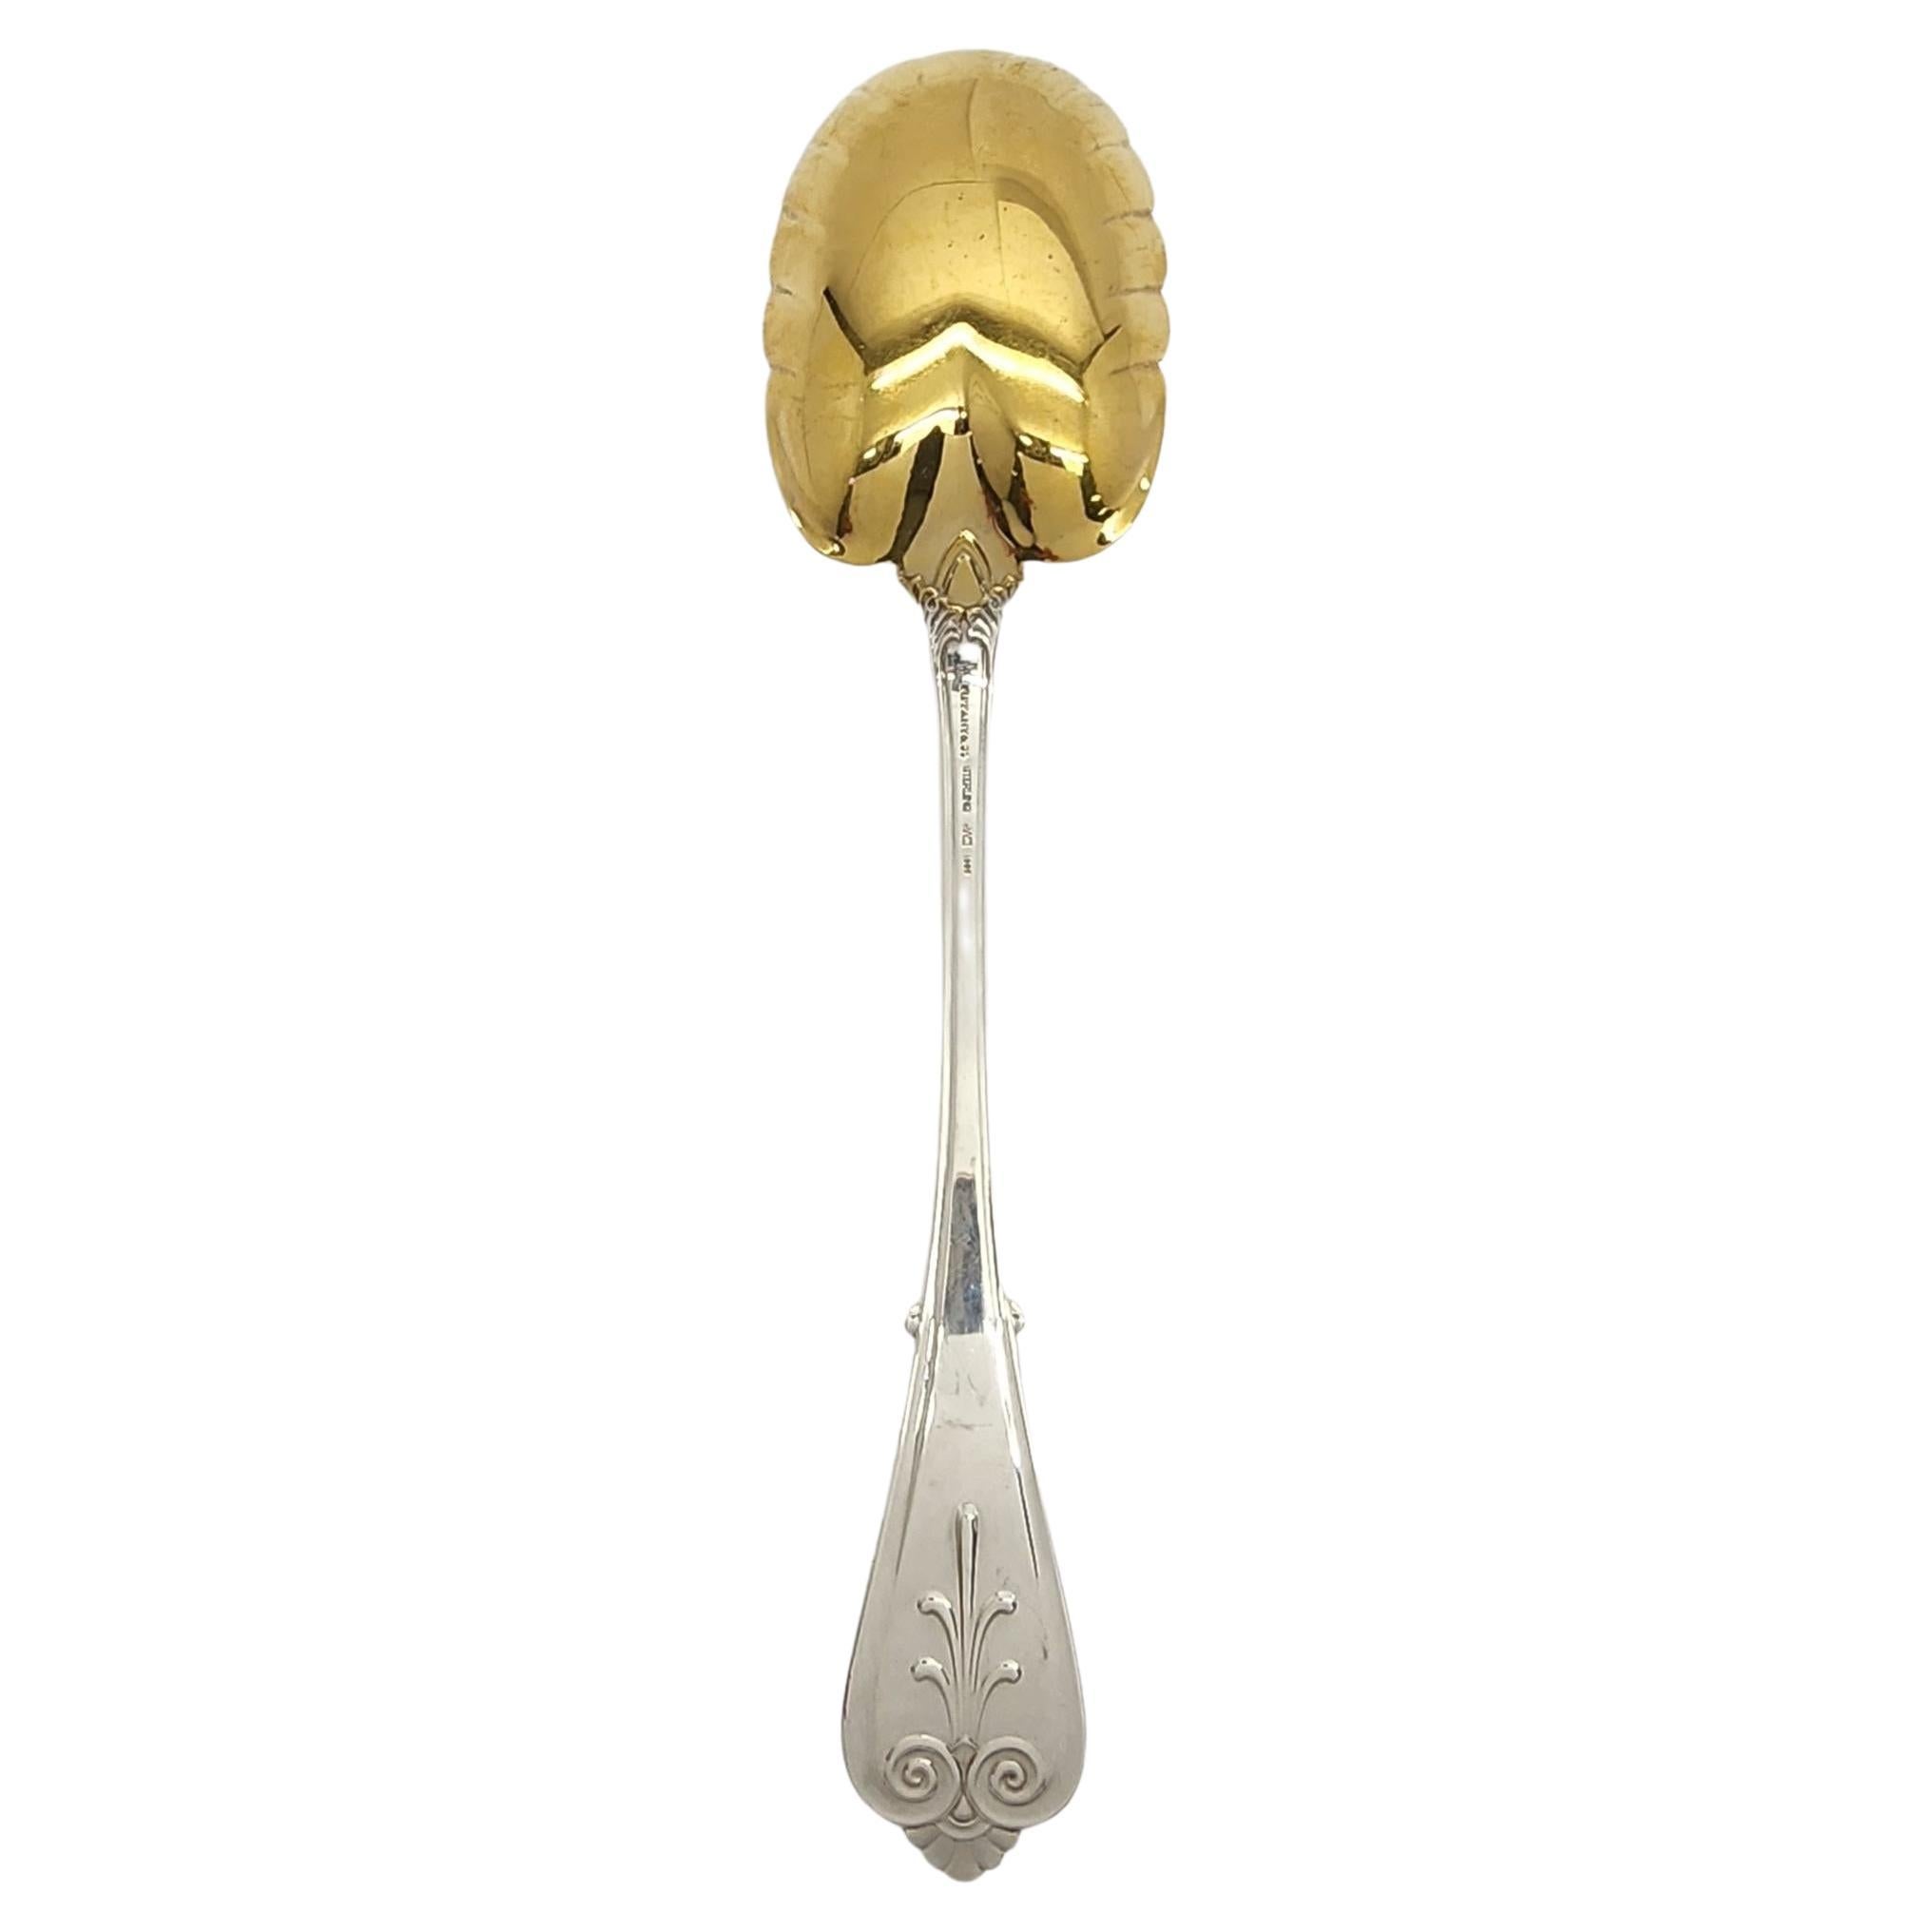 Tiffany & Co sterling silver gold wash bowl berry serving spoon in the Beekman 1869 pattern by Tiffany & Co.

Le Monogramme semble être EPM

Ce magnifique motif de volute simple a été conçu en 1869 par Edward Moore. Le bol en forme de feuille est